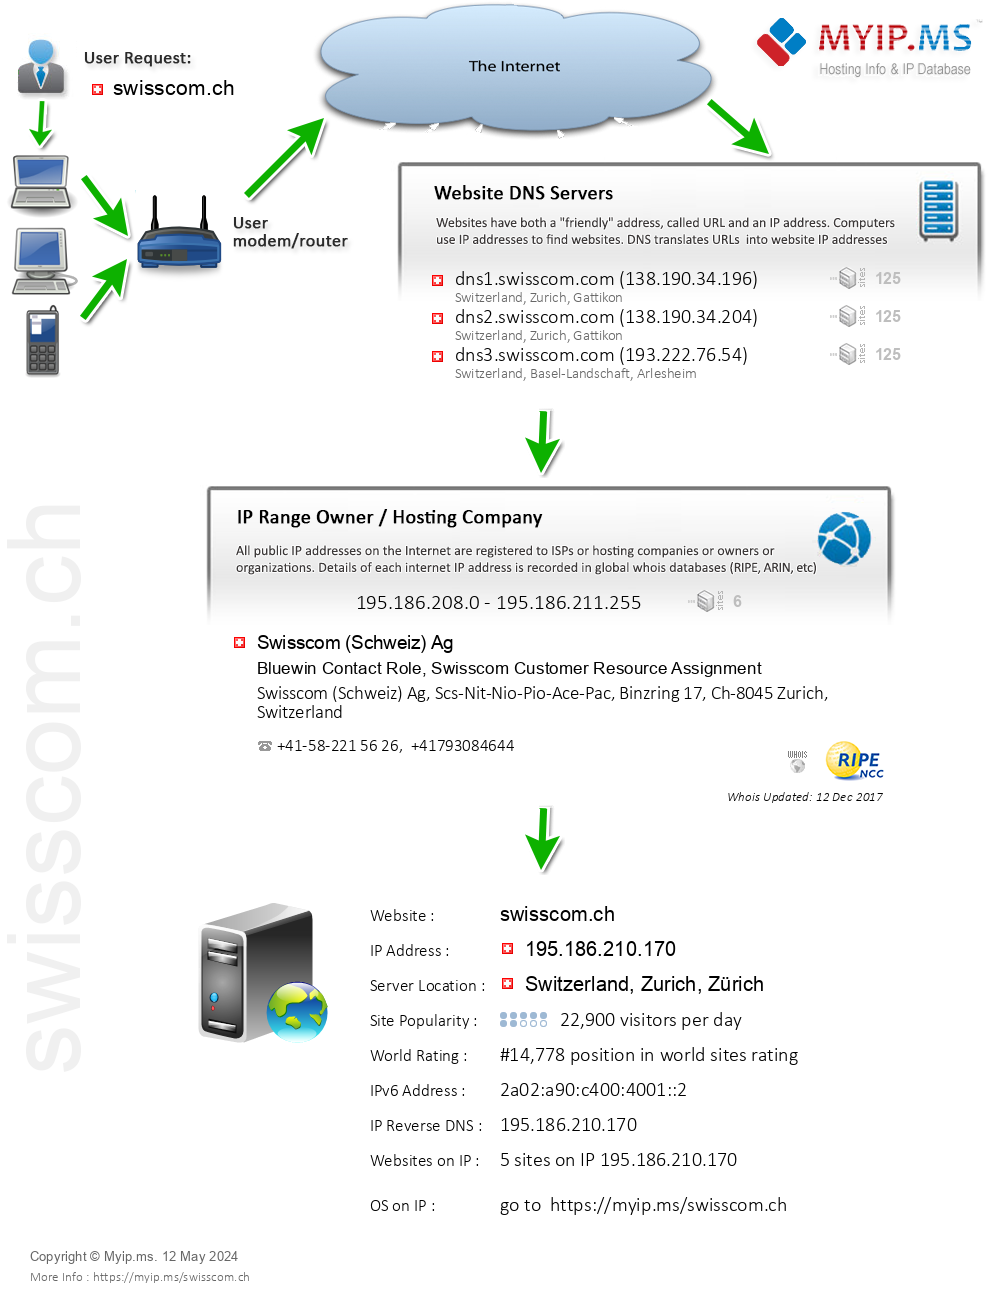 Swisscom.ch - Website Hosting Visual IP Diagram